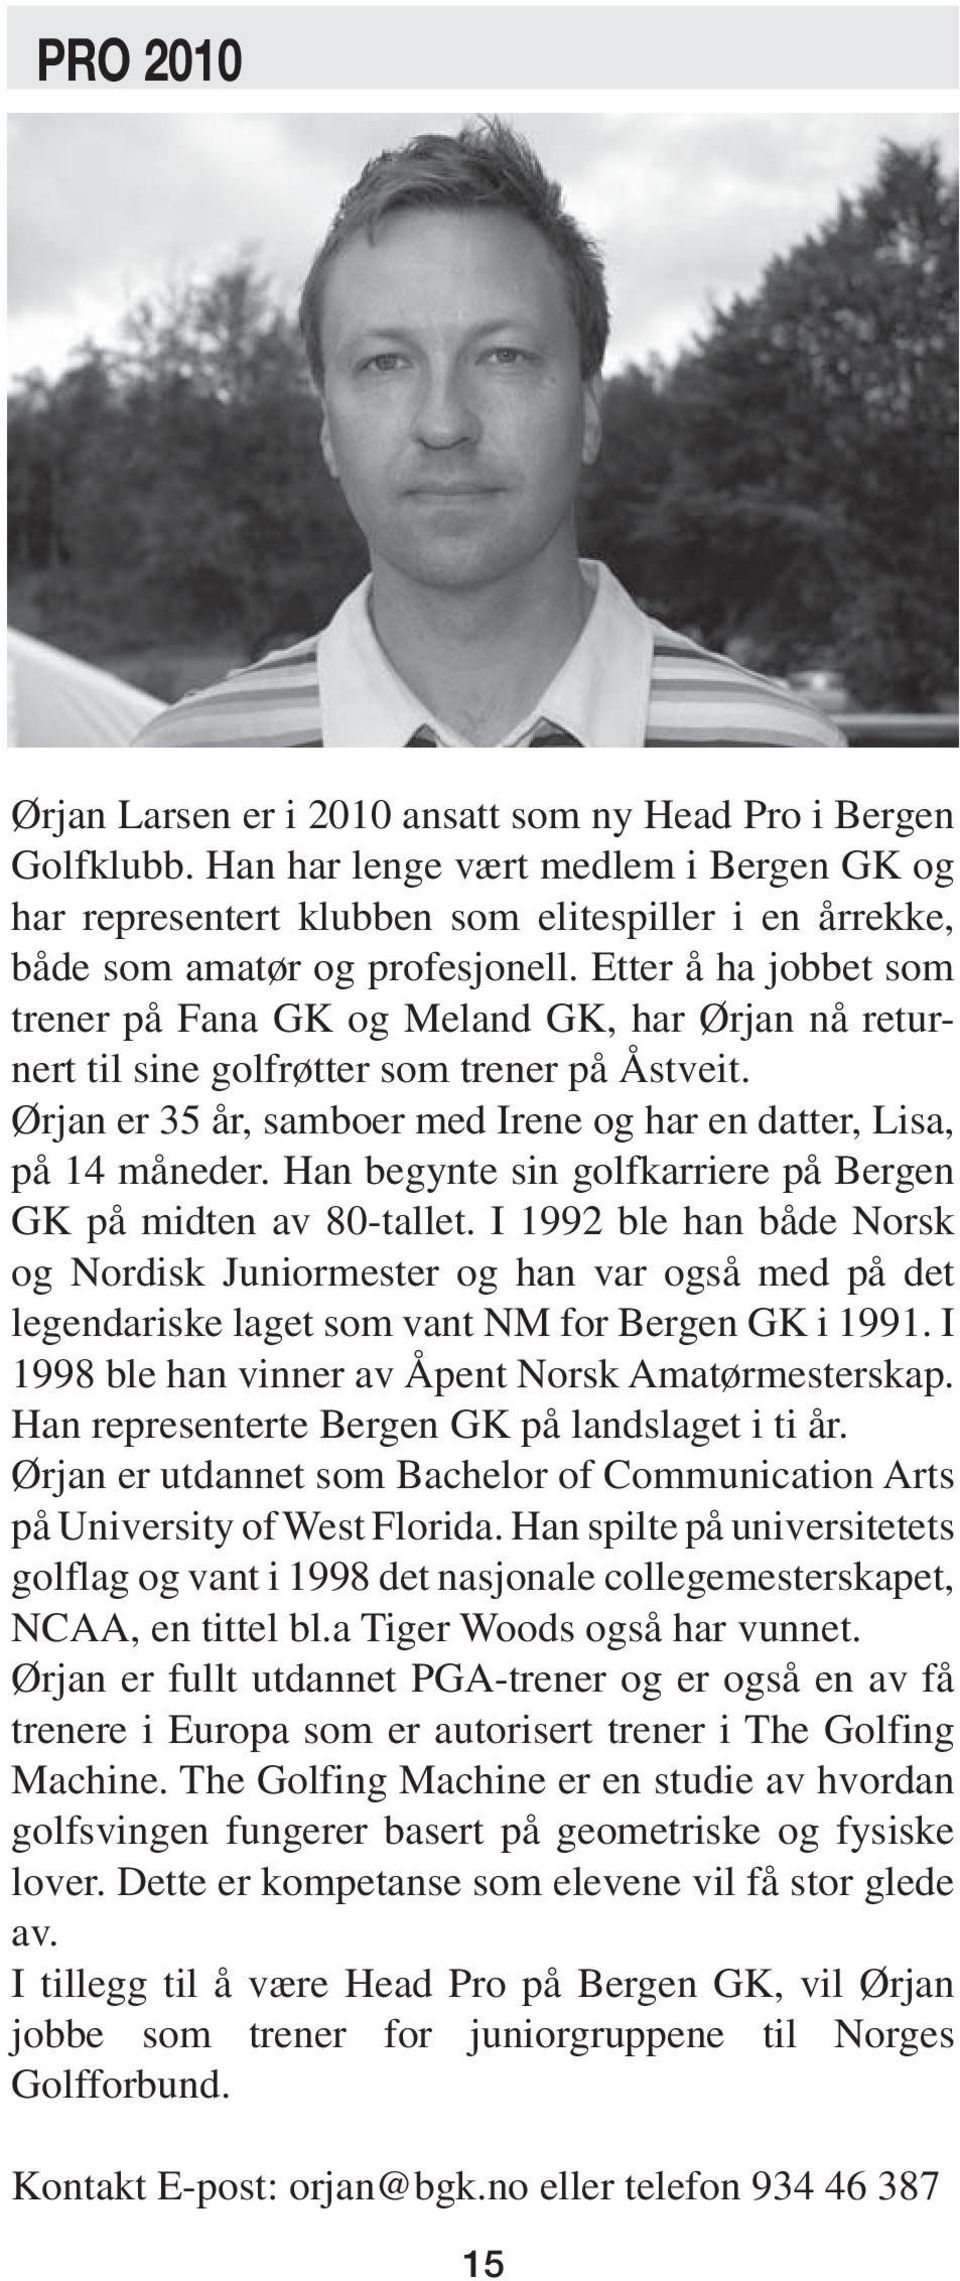 Etter å ha jobbet som trener på Fana GK og Meland GK, har Ørjan nå returnert til sine golfrøtter som trener på Åstveit. Ørjan er 35 år, samboer med Irene og har en datter, Lisa, på 14 måneder.